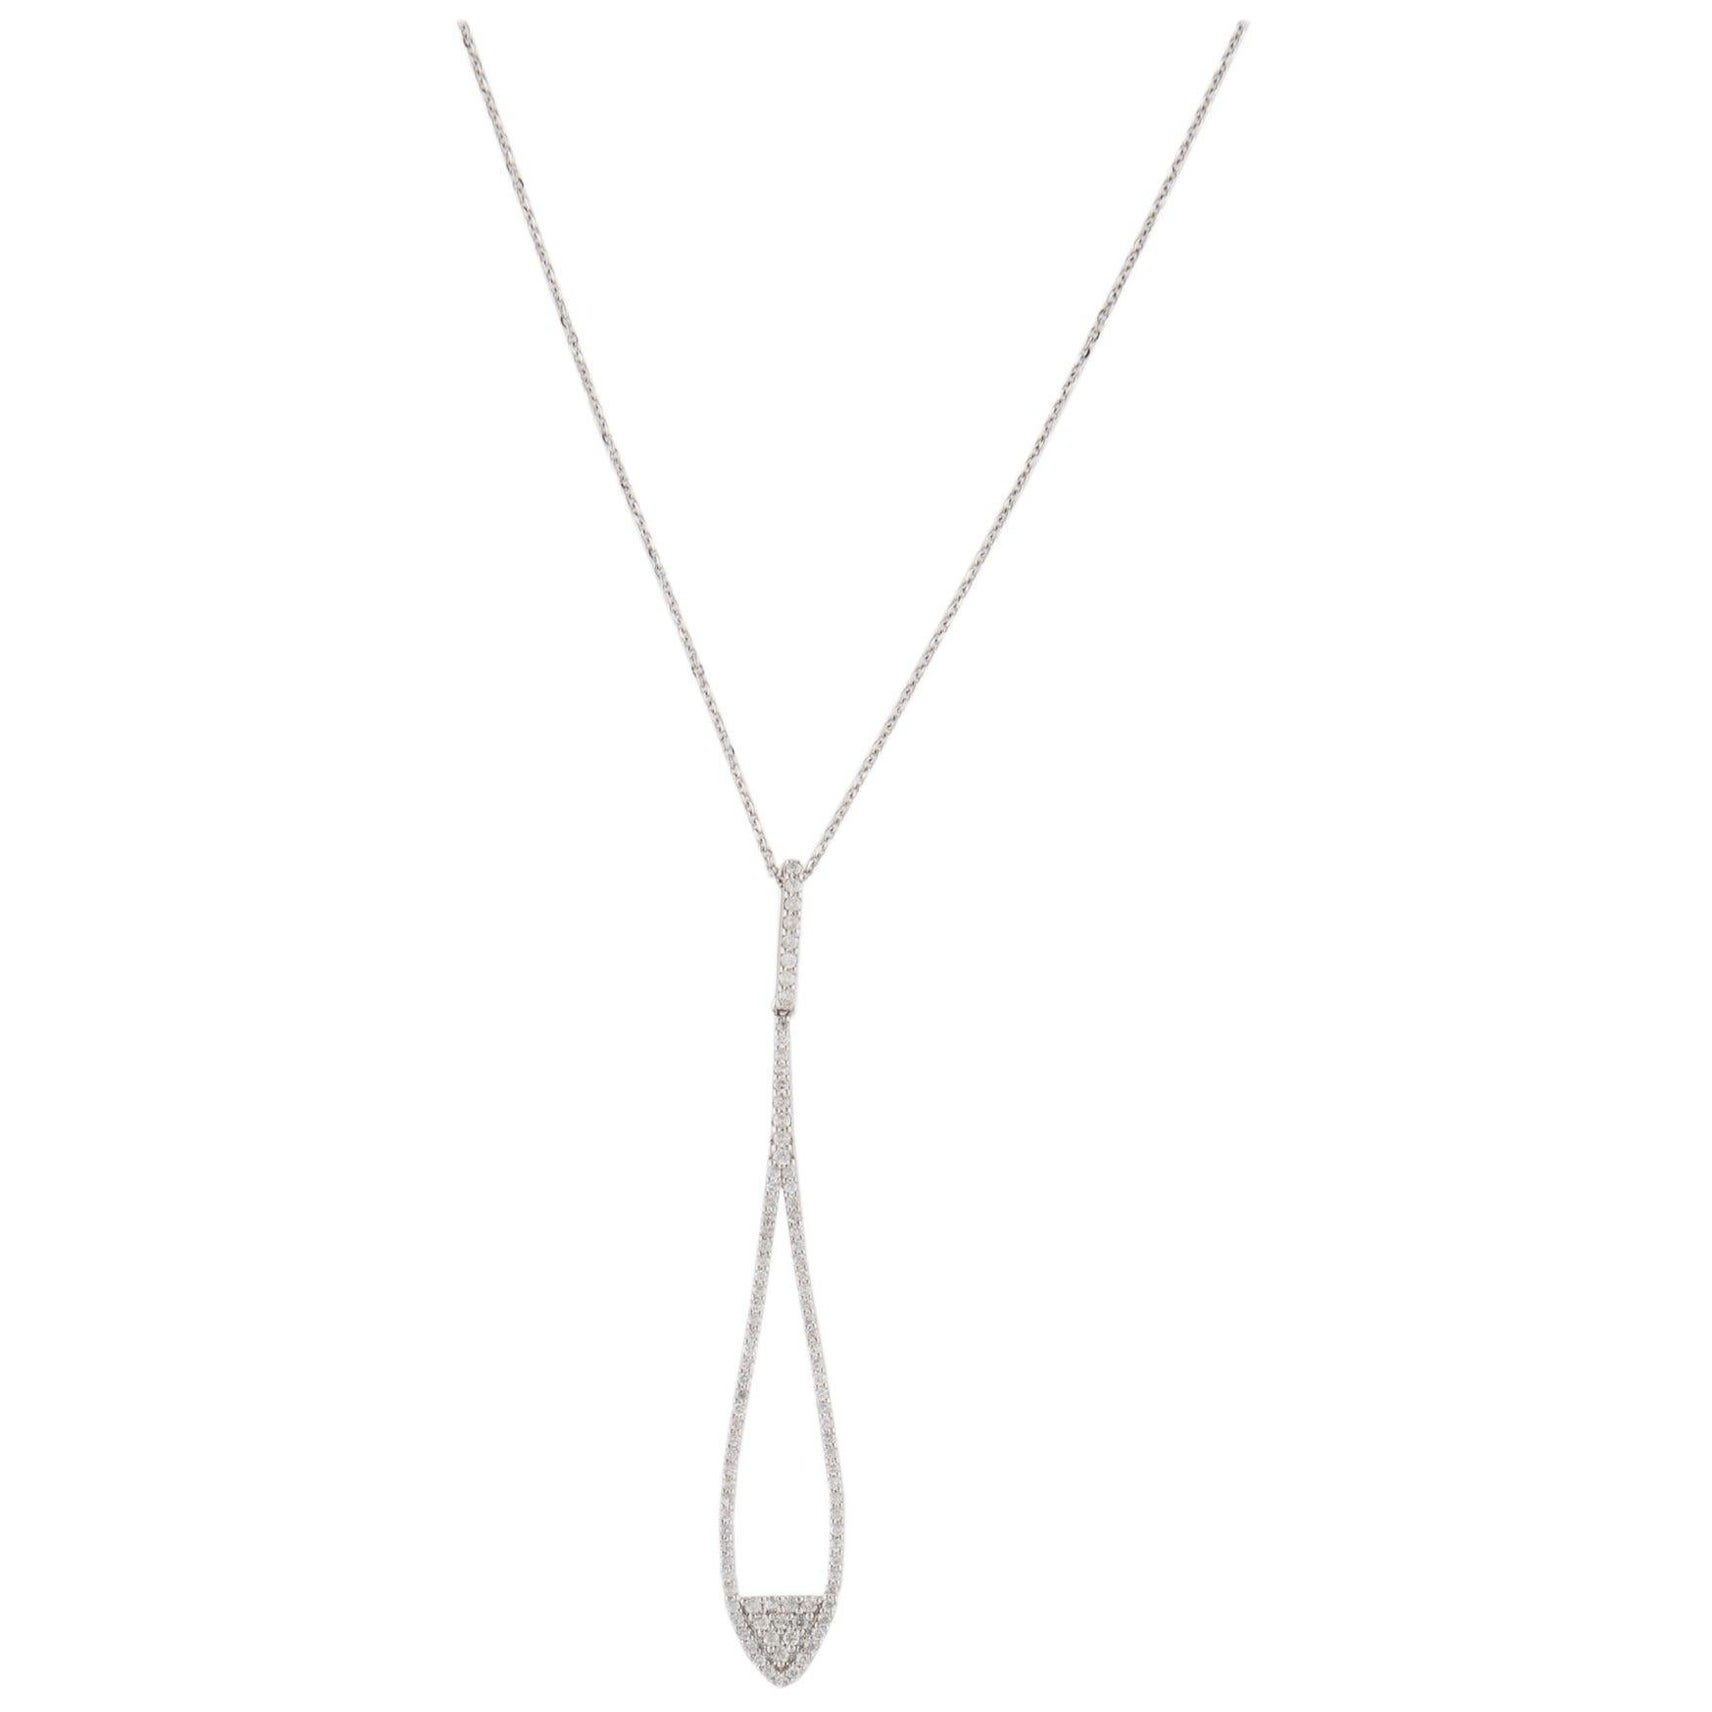 14K Diamond Pavé Drop Pendant Necklace - Elegant Luxury Statement Piece For Sale